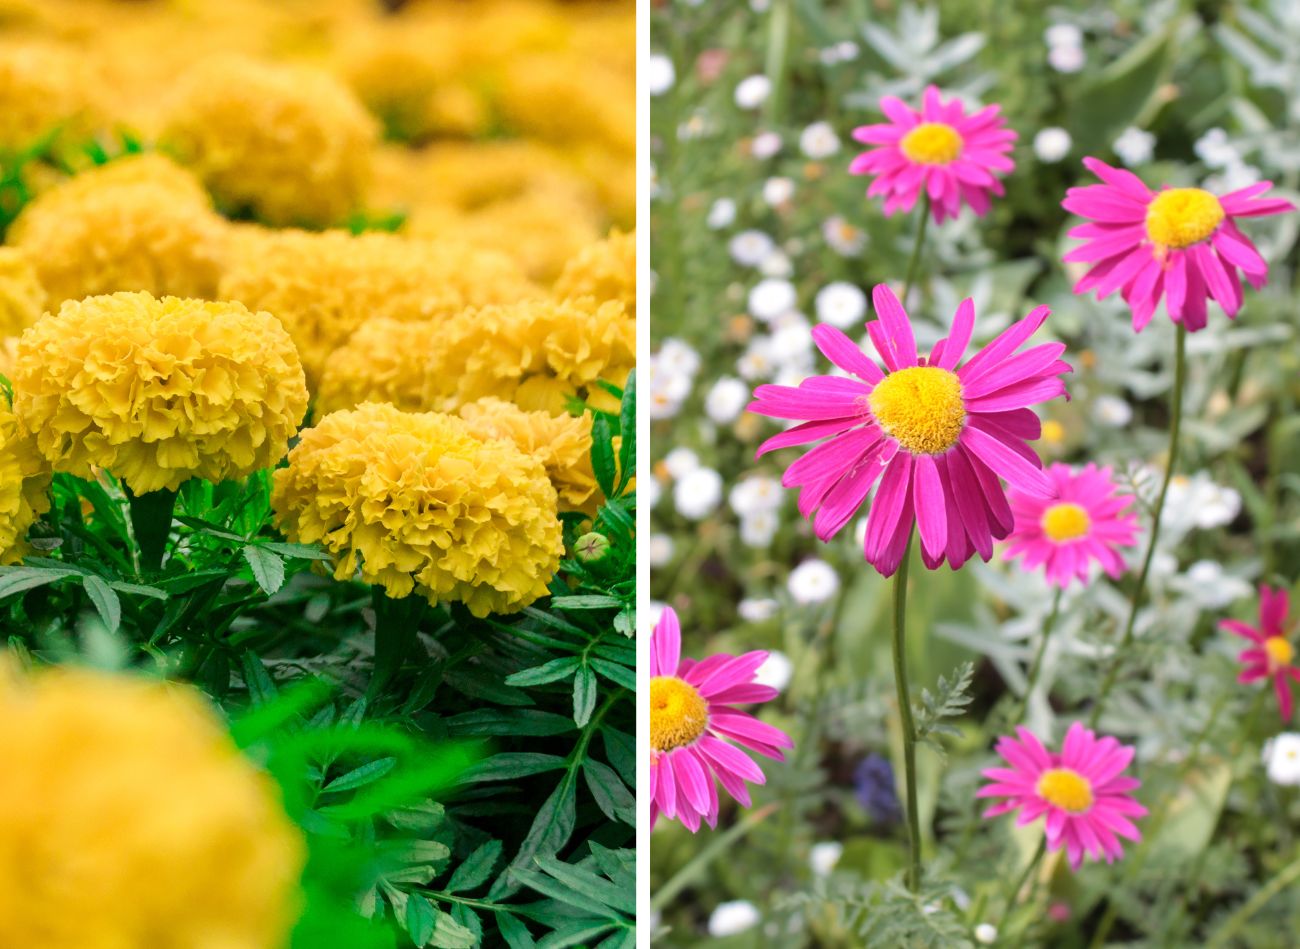  Najlepsze kwiaty do sadzenia w ogrodzie dla alergików. Oszczędzą ci kataru i kichania